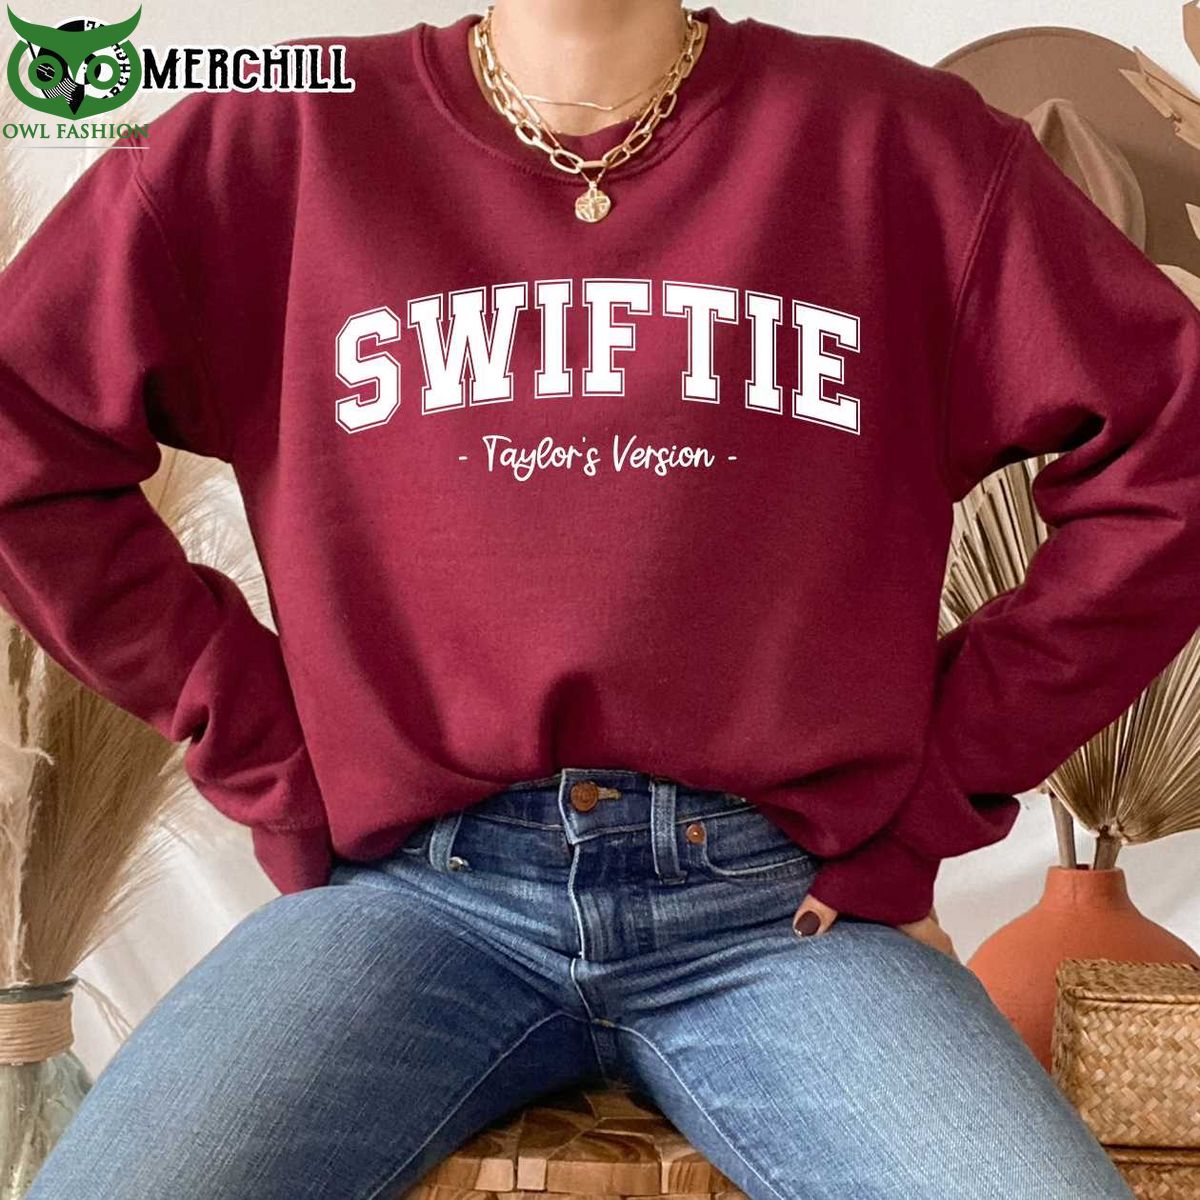 swiftie taylors version sweatshirt best gifts for taylor swift fans 1 j7WR2.jpg